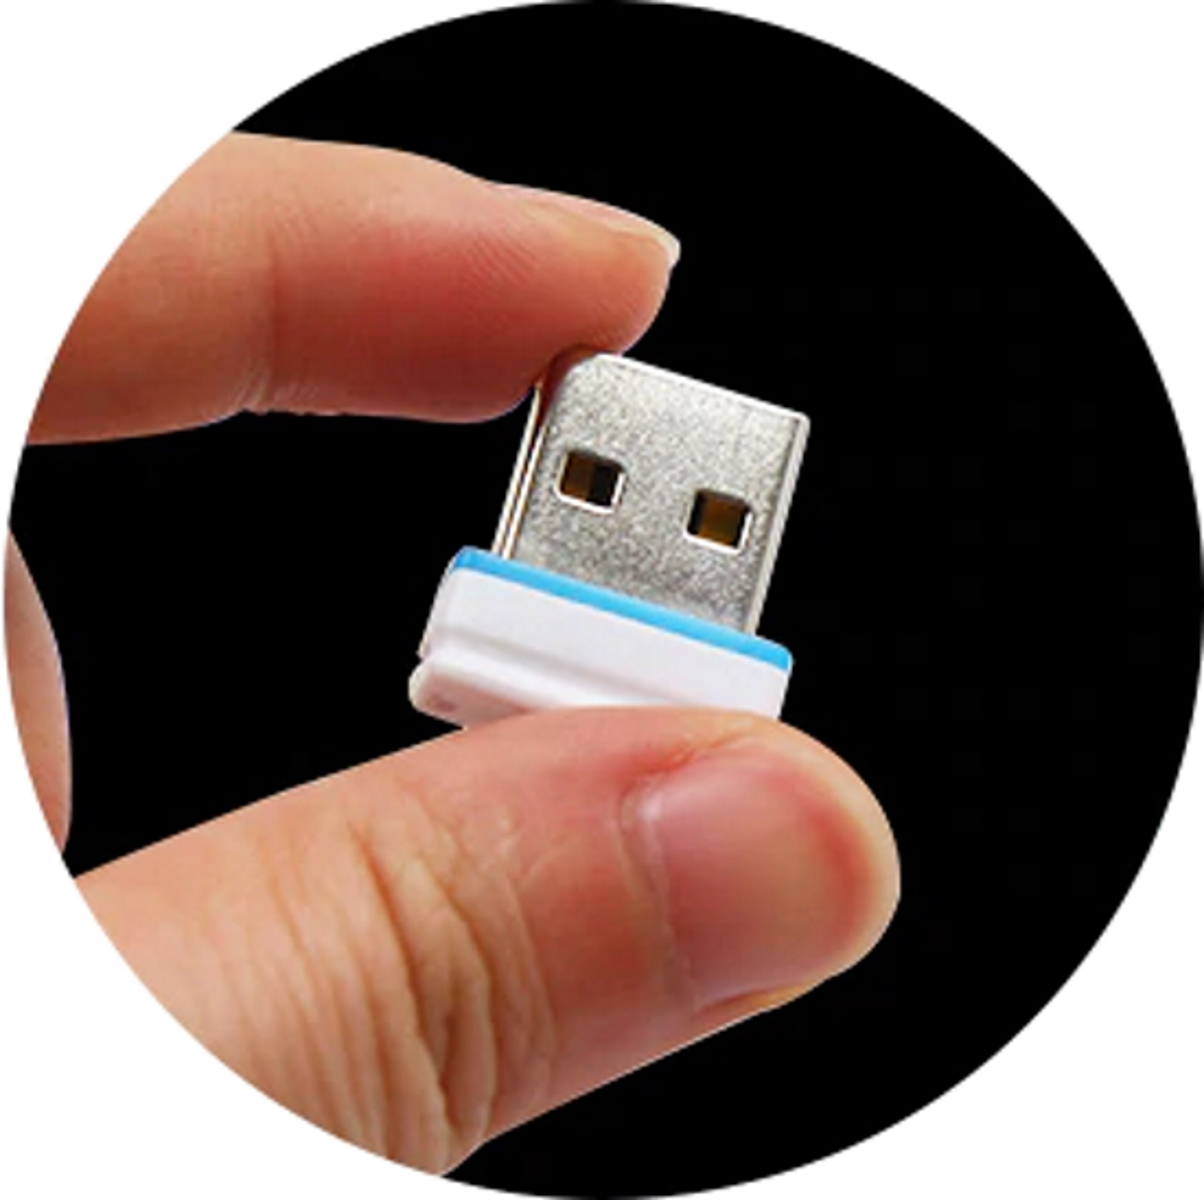 GERMANY 64 P1 GB) USB-Stick ®ULTRA (Gelb, Mini USB